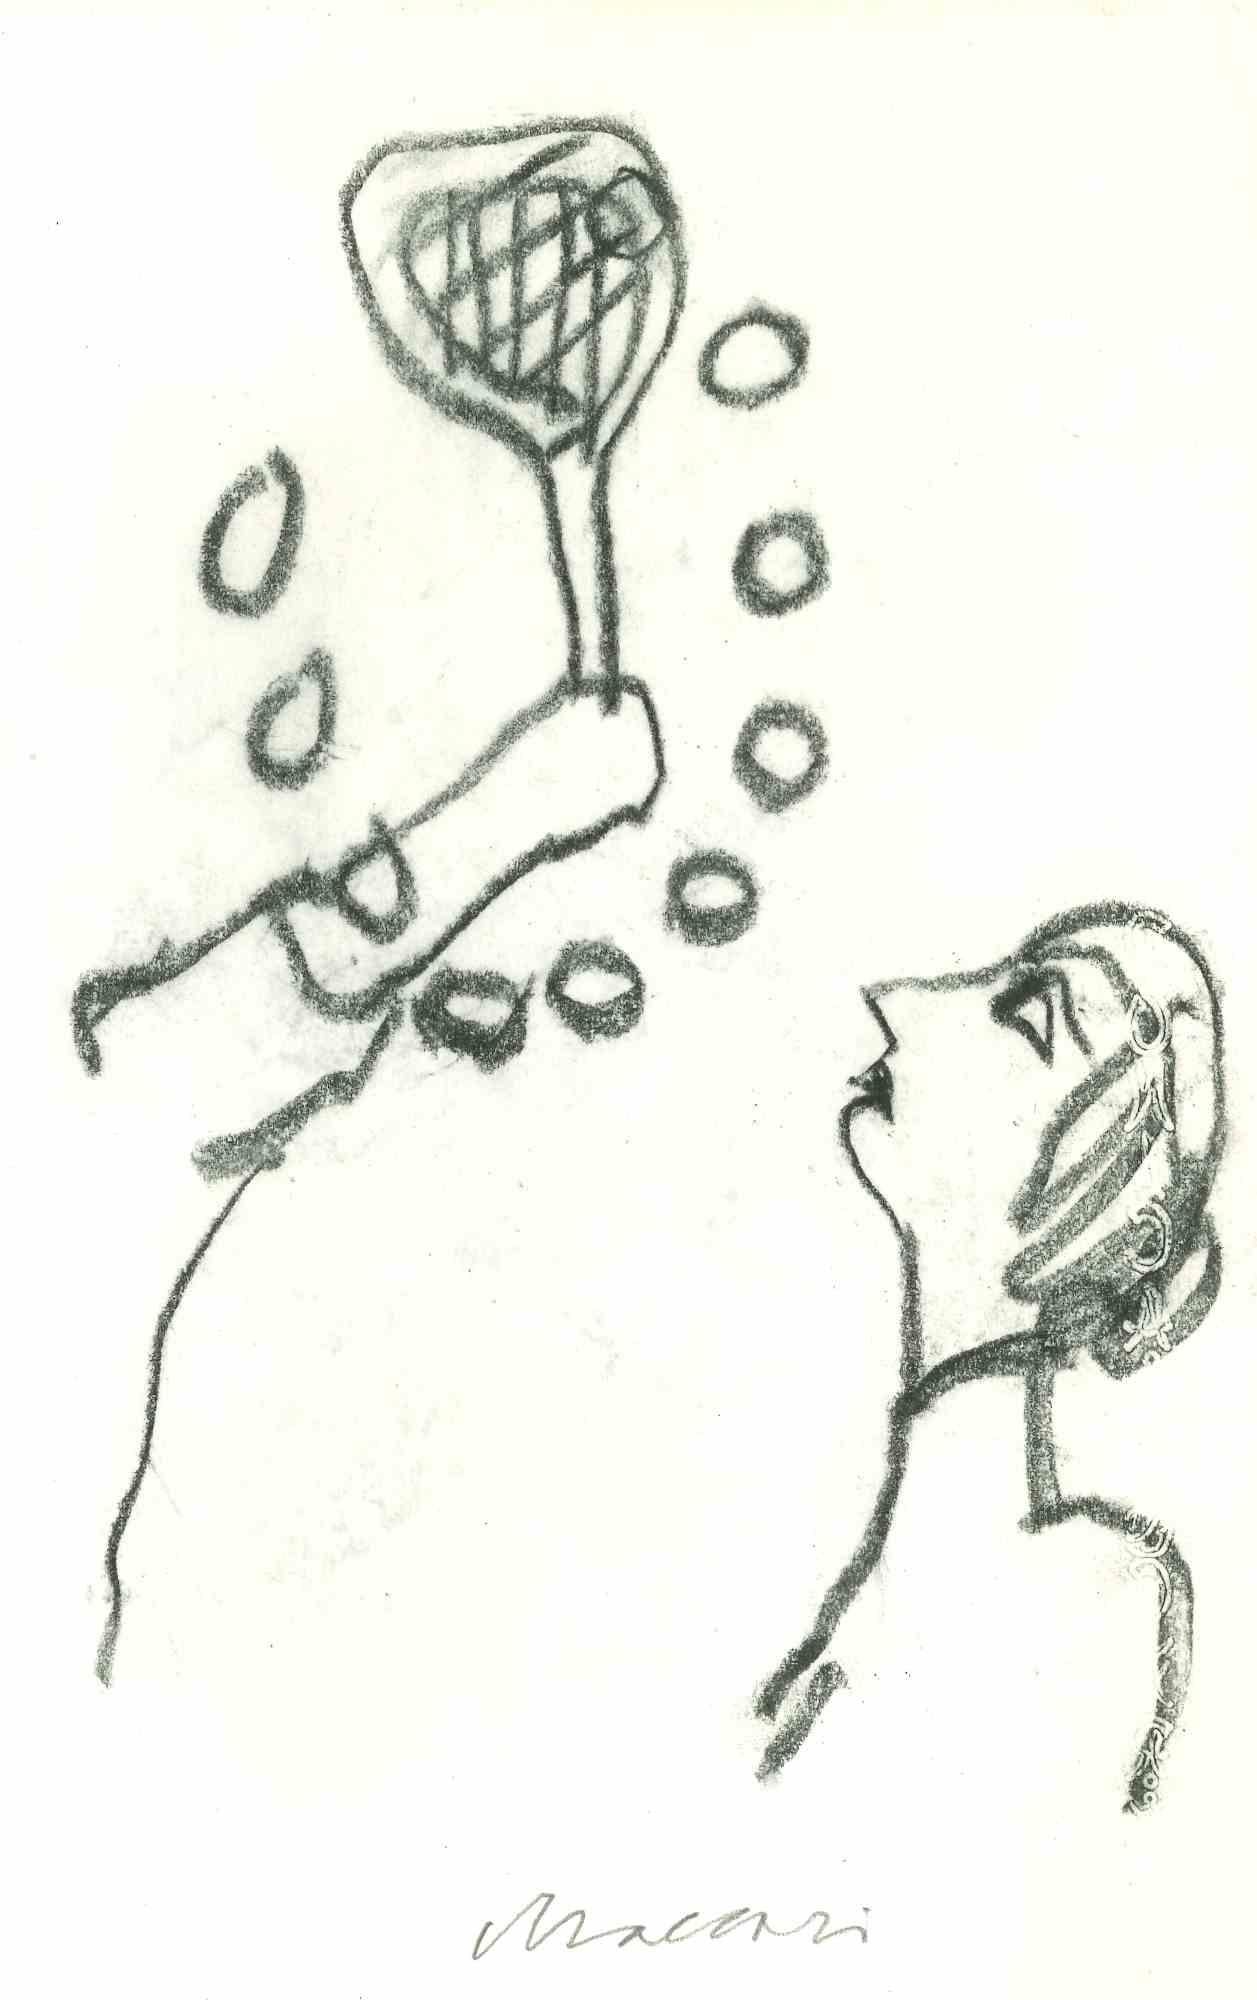 Learning Tennis ist eine Kohlezeichnung von Mino Maccari  (1924-1989) in der Mitte des 20. Jahrhunderts.

Handsigniert im unteren Bereich.

Gute Bedingungen.

Mino Maccari (Siena, 1924-Rom, 16. Juni 1989) war ein italienischer Schriftsteller, Maler,